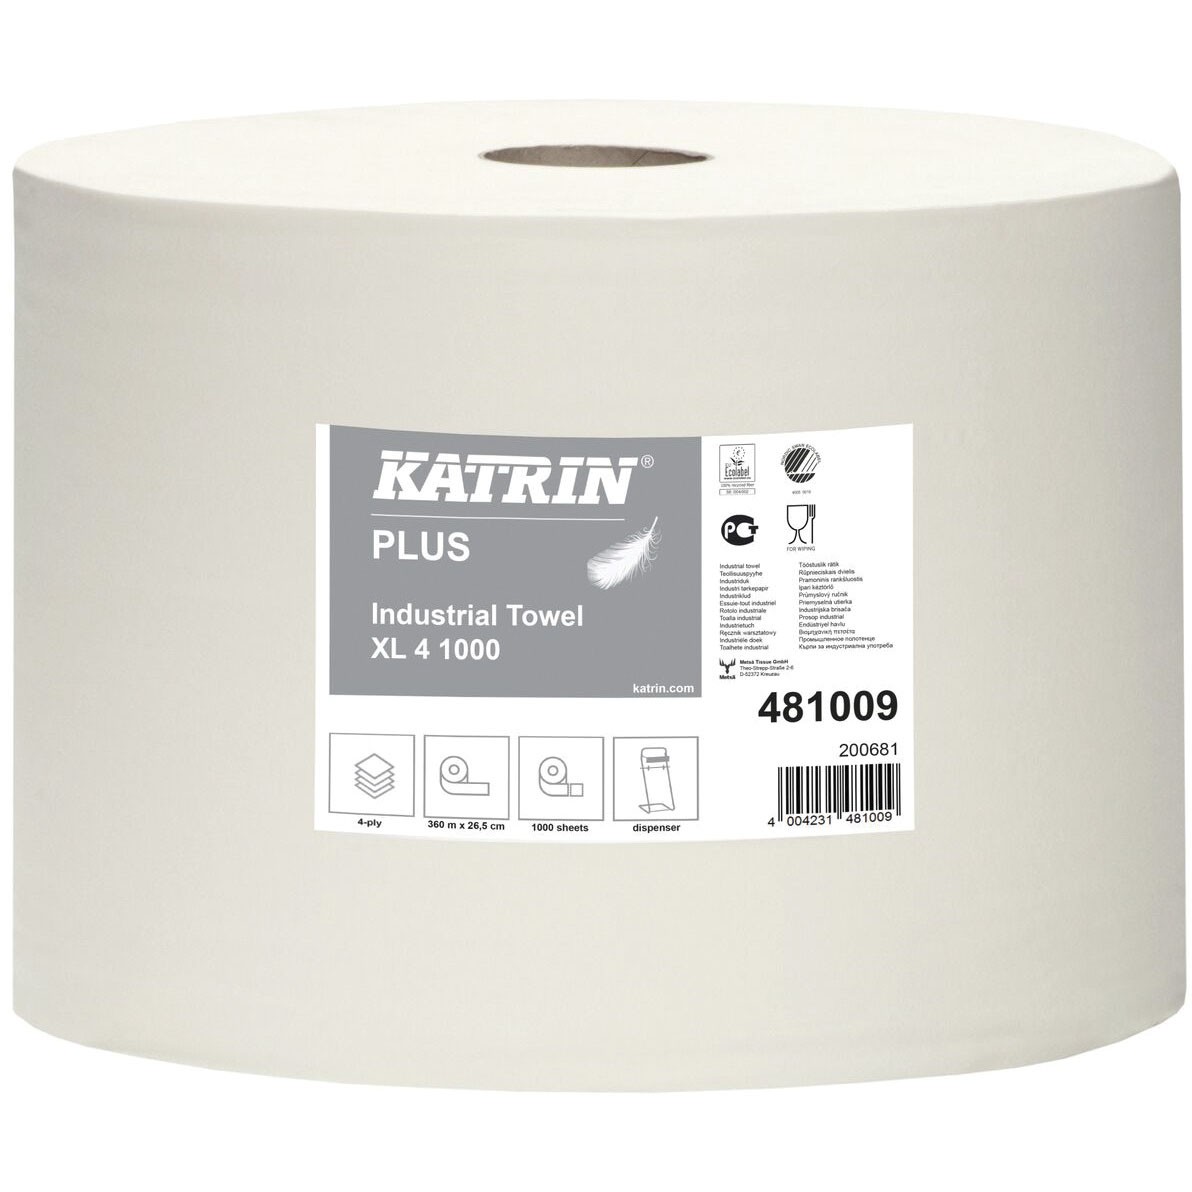 Katrin Industrirulle Plus XL hvid 481009